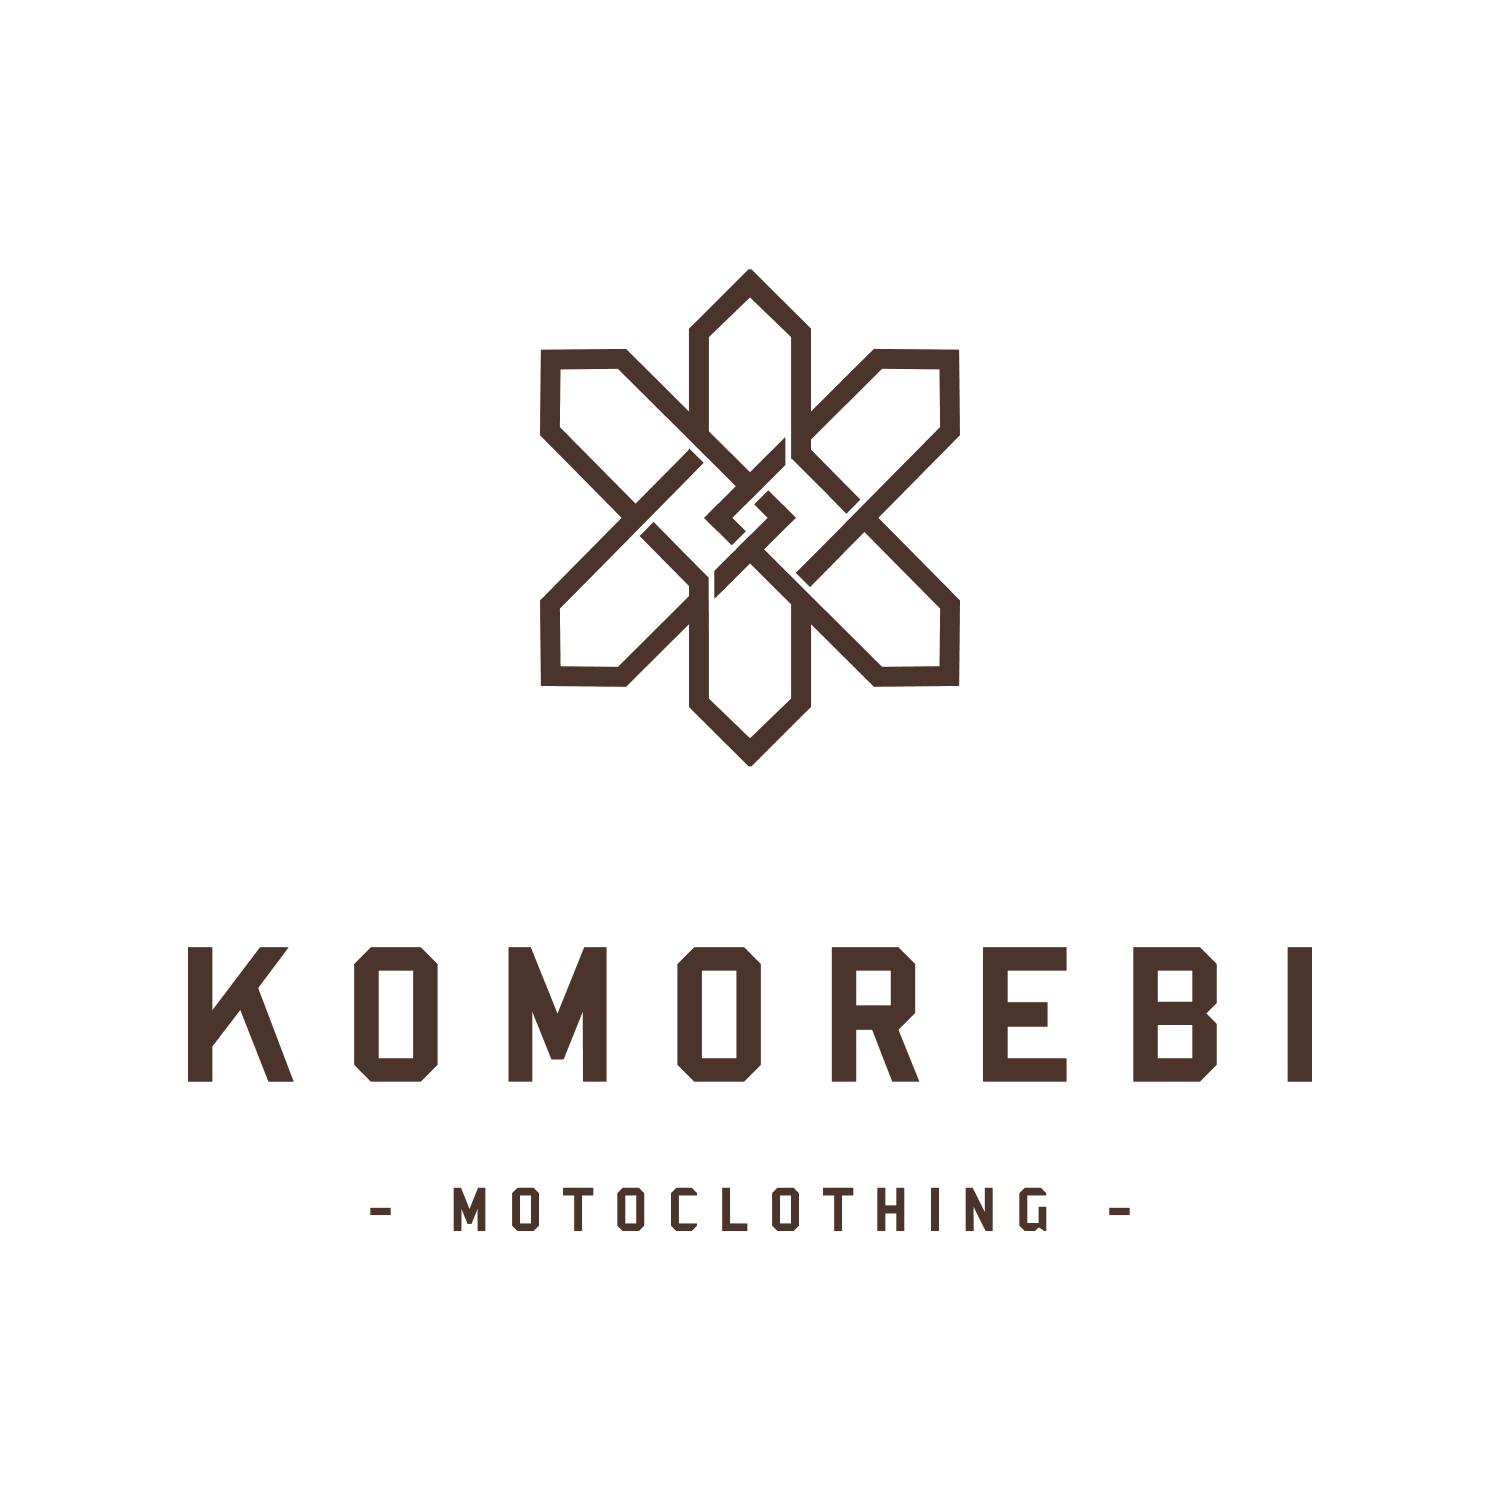 branding 01 komorebi narrative naming motoclothing move design logo 